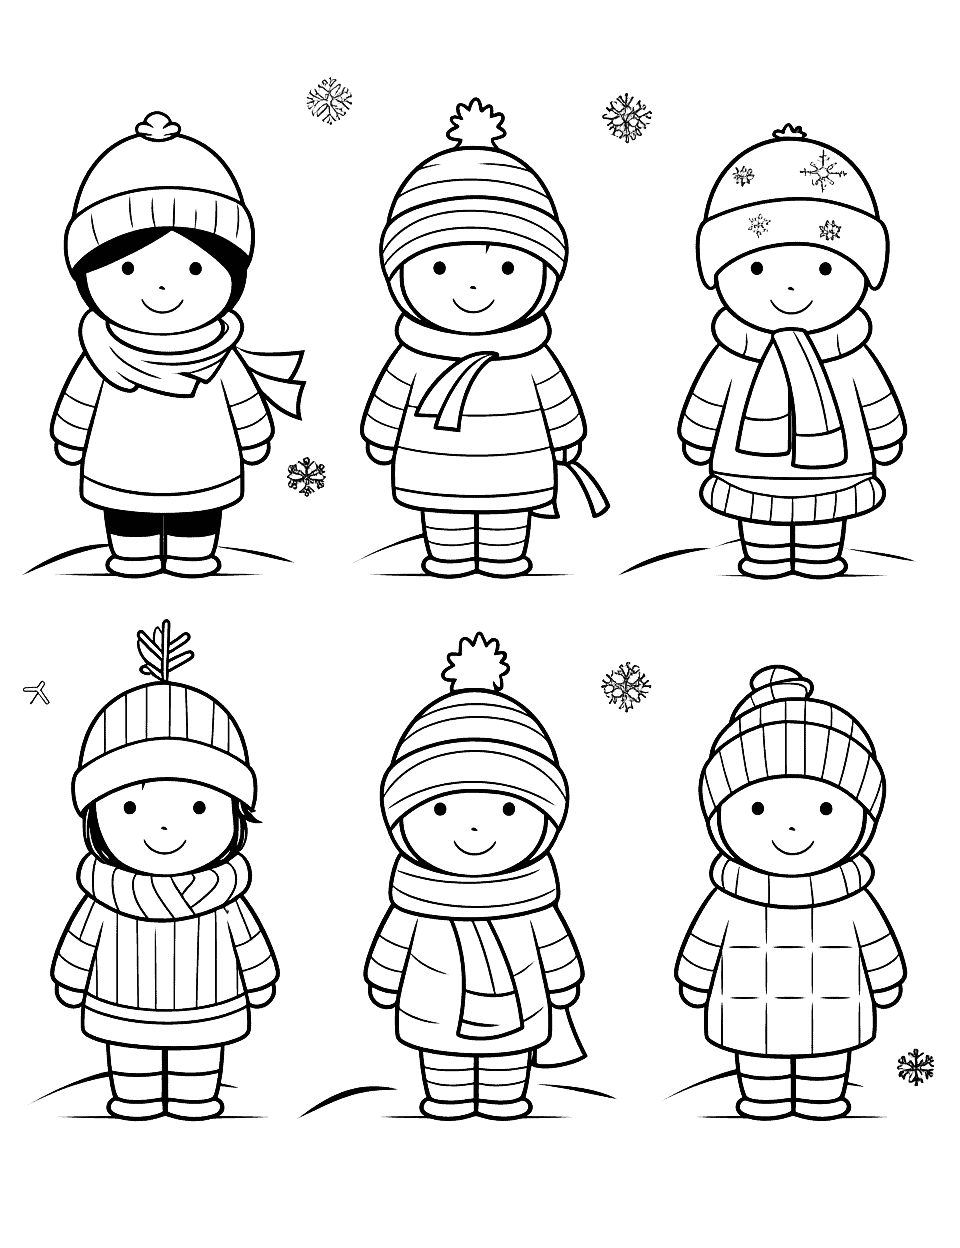 Preschool Winter Clothes Coloring Page - Outlines of various winter clothes for preschoolers to color.